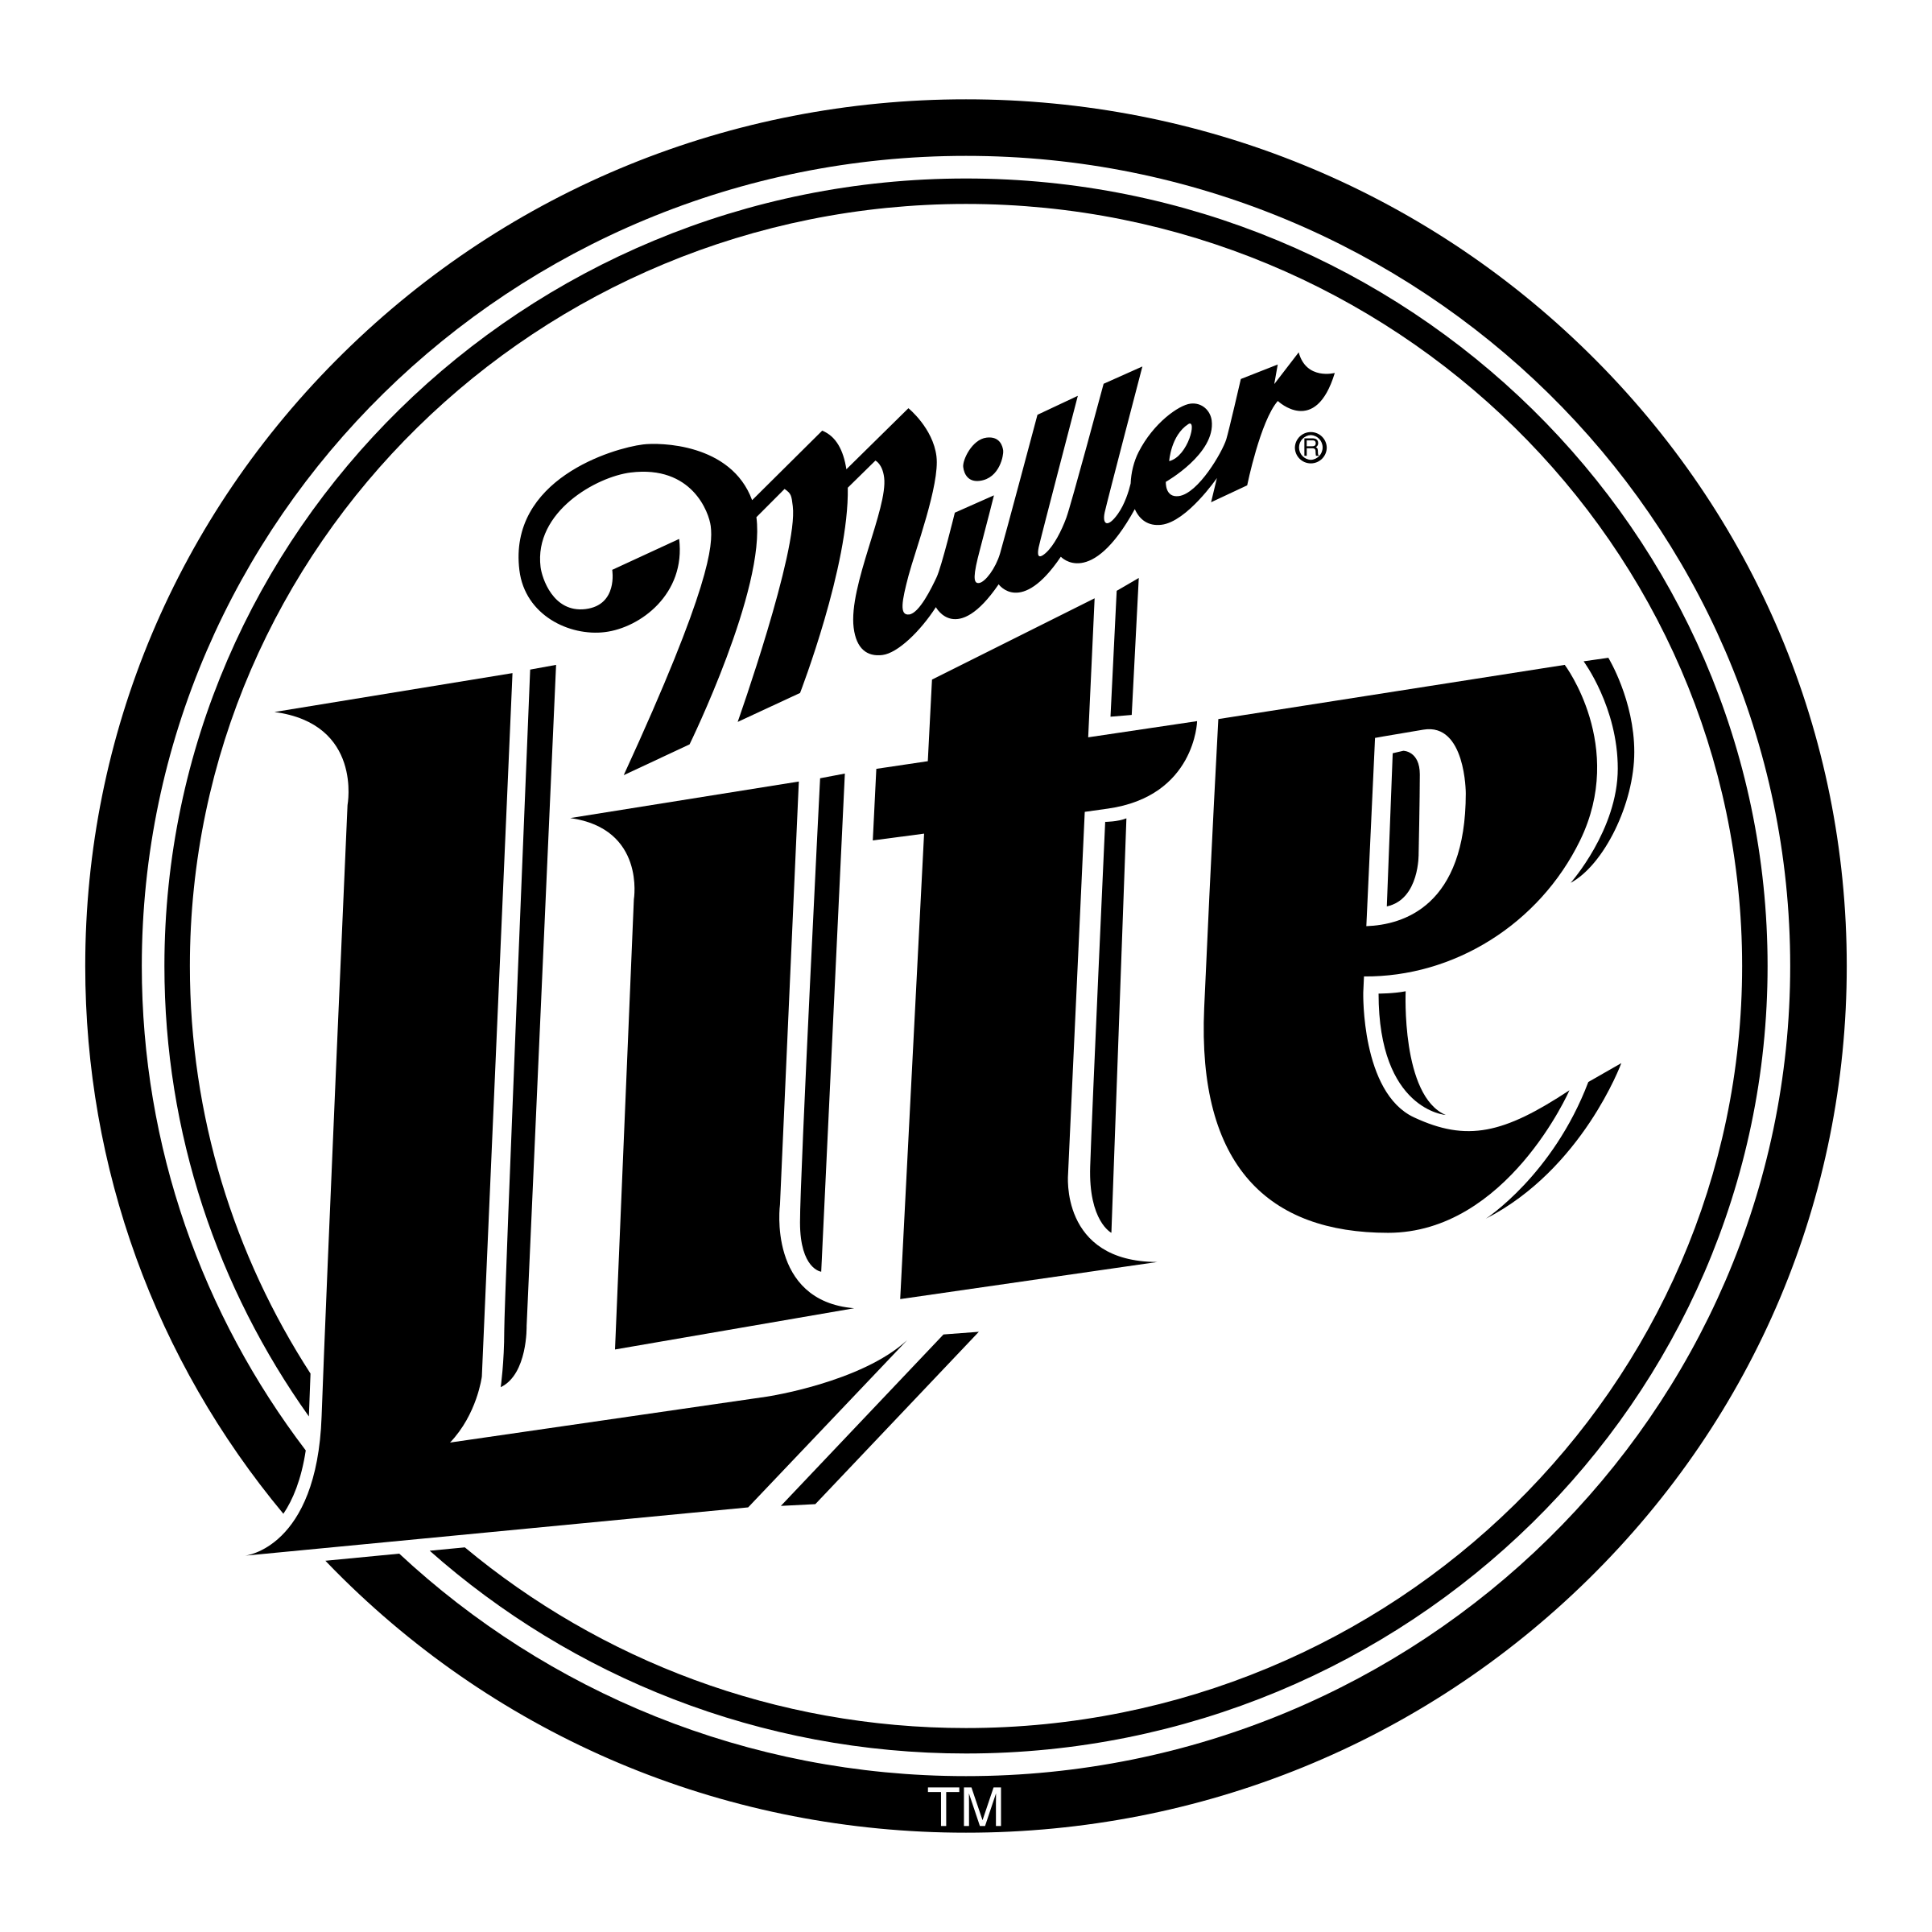 Lite Logo - Miller Lite Logo PNG Transparent & SVG Vector - Freebie Supply